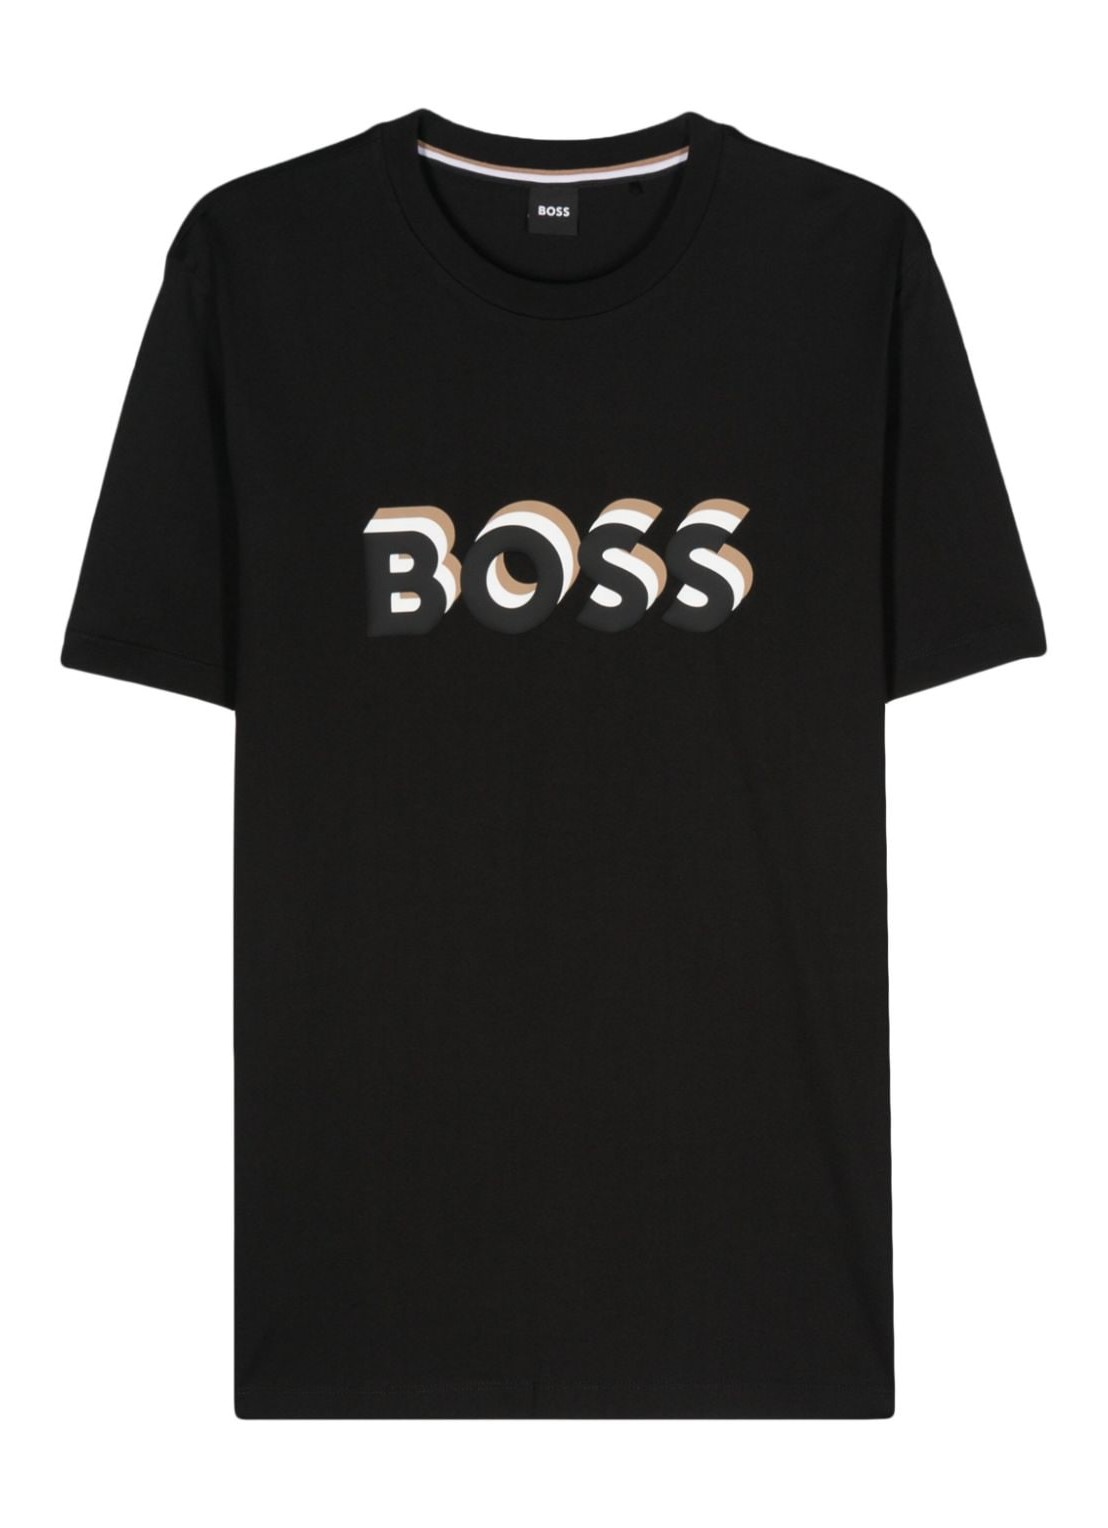 Camiseta boss t-shirt man tiburt 427 50506923 001 talla S
 